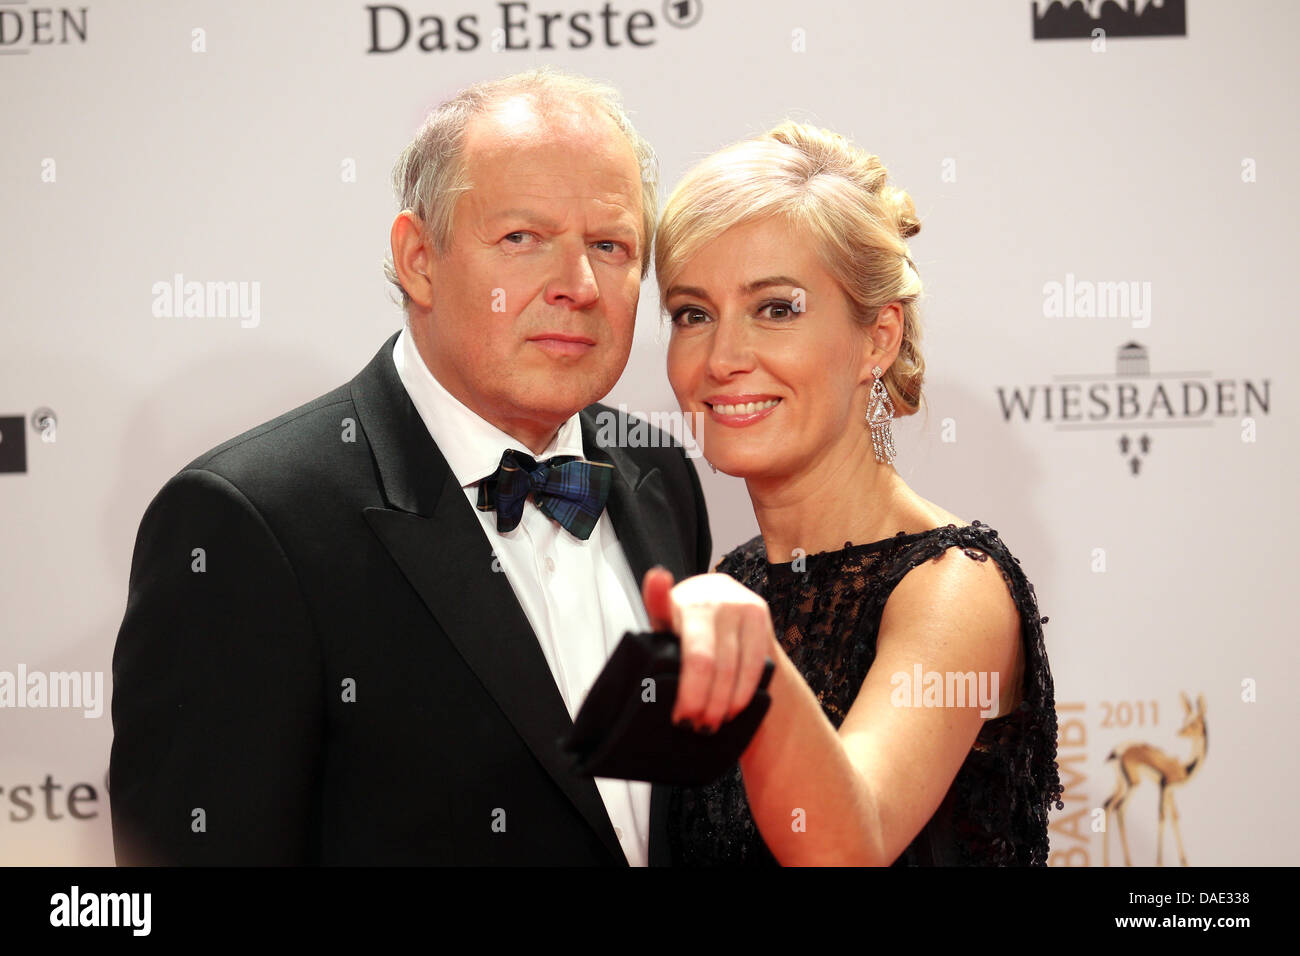 Attore tedesco Axel Milberg e sua moglie Judith arriva per il Bambi award a Wiesbaden, Germania, 10 novembre 2011. Il Bambis sono i principali media tedeschi awards e vengono presentati per la 63a volta. Foto: Michael Kappeler dpa/i Foto Stock